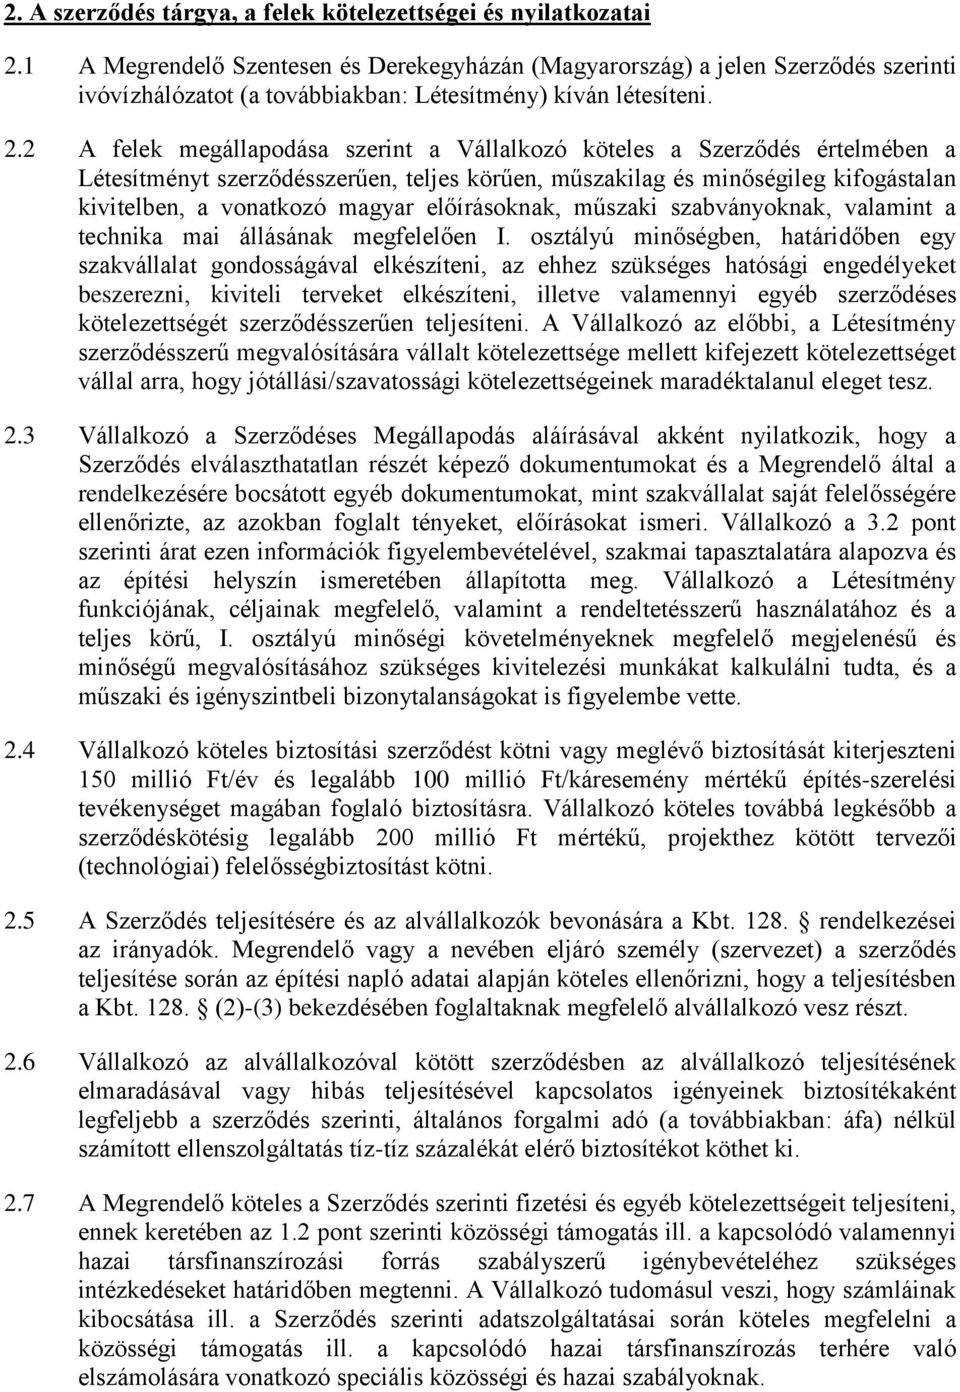 2 A felek megállapodása szerint a Vállalkozó köteles a Szerződés értelmében a Létesítményt szerződésszerűen, teljes körűen, műszakilag és minőségileg kifogástalan kivitelben, a vonatkozó magyar